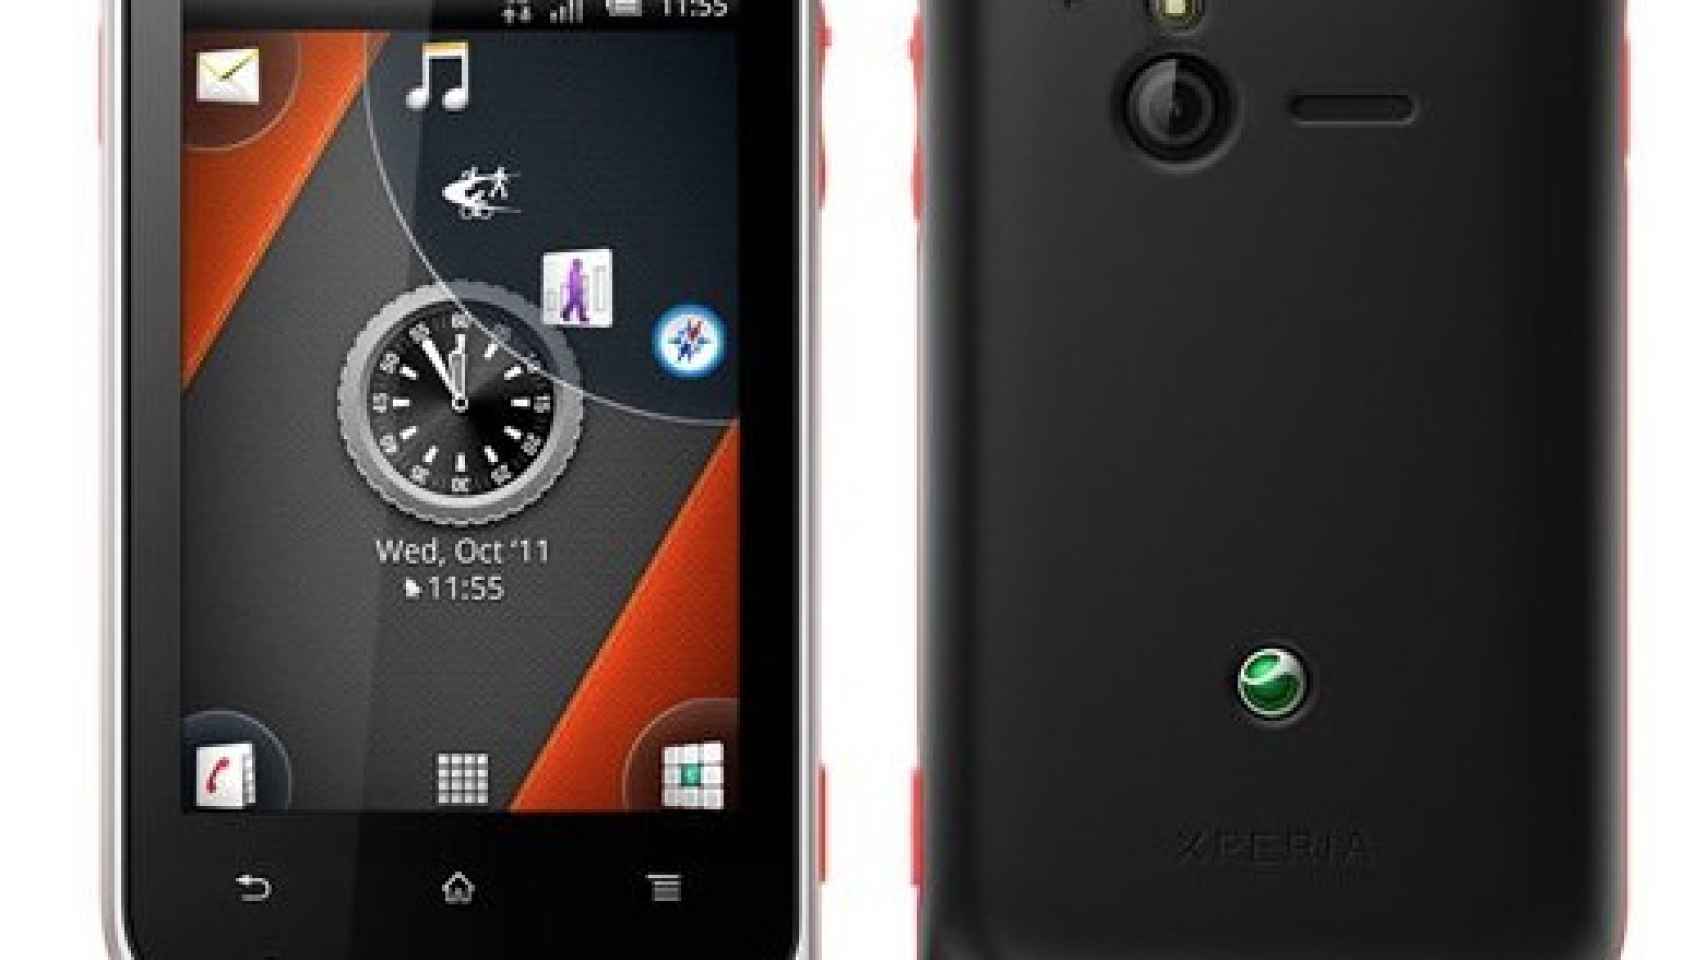 Un paso mas allá en los teléfonos ultra resistentes: Sony Ericsson Xperia Active